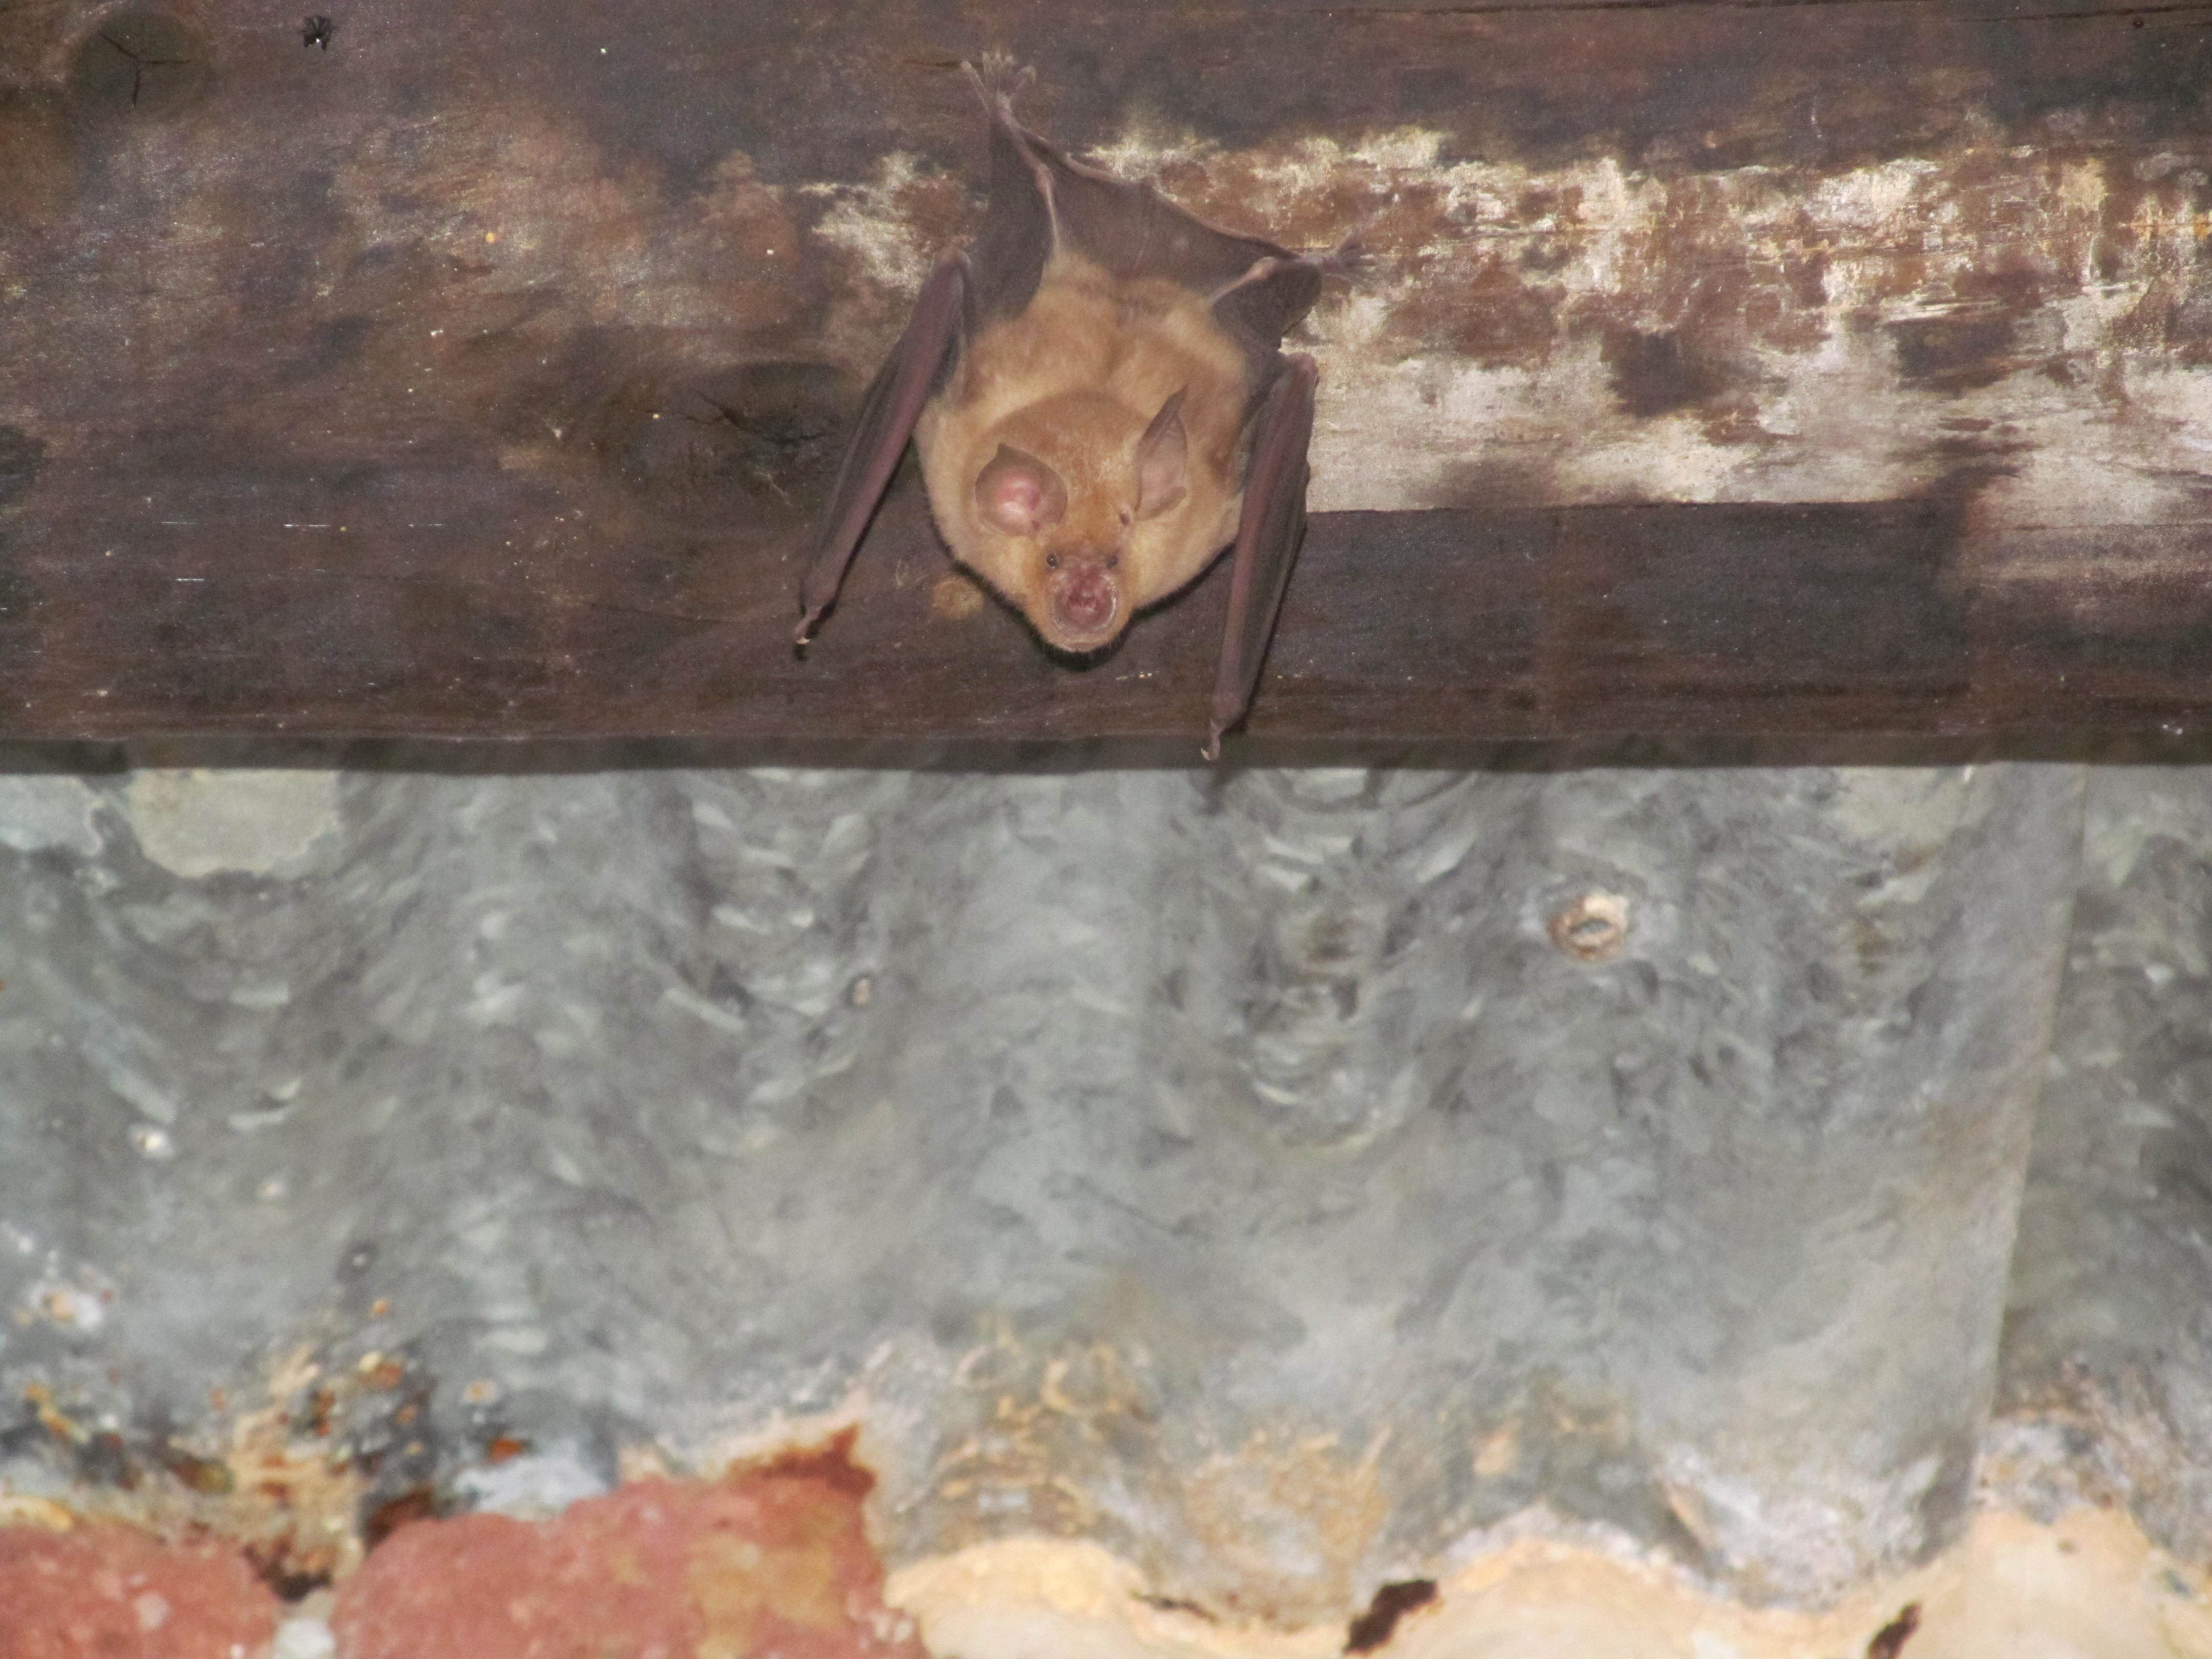 Image of horseshoe bats